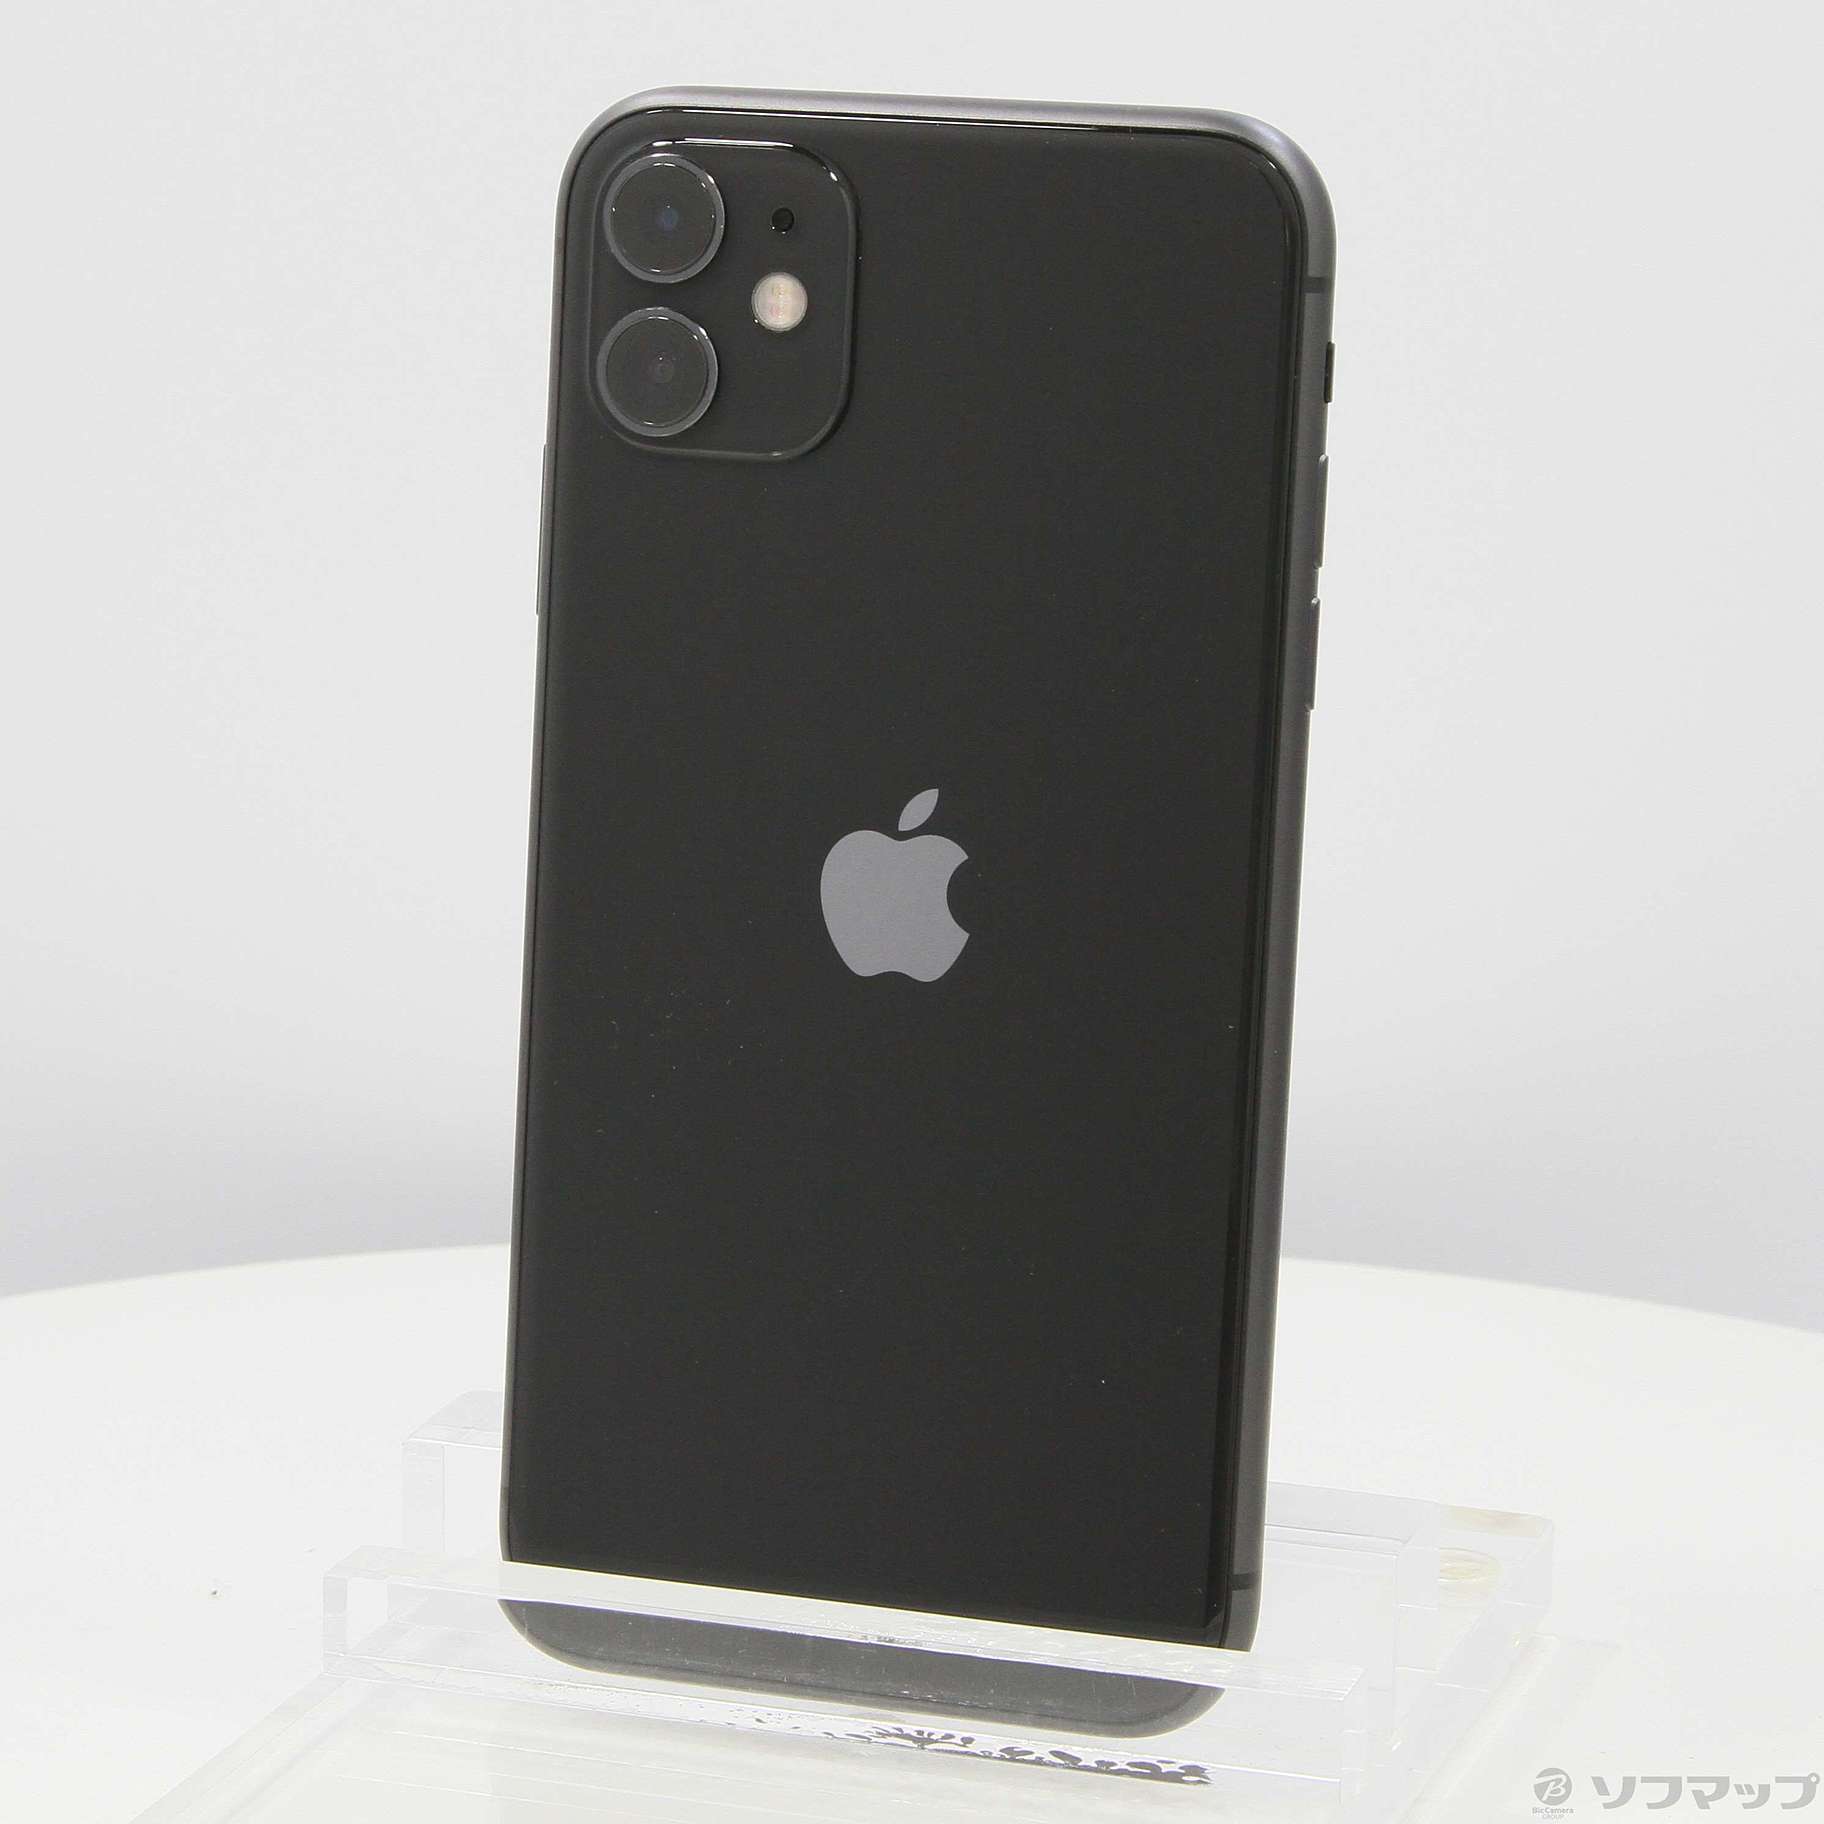 iPhone11 128GB SIMフリーブラック 新品未使用品未開封